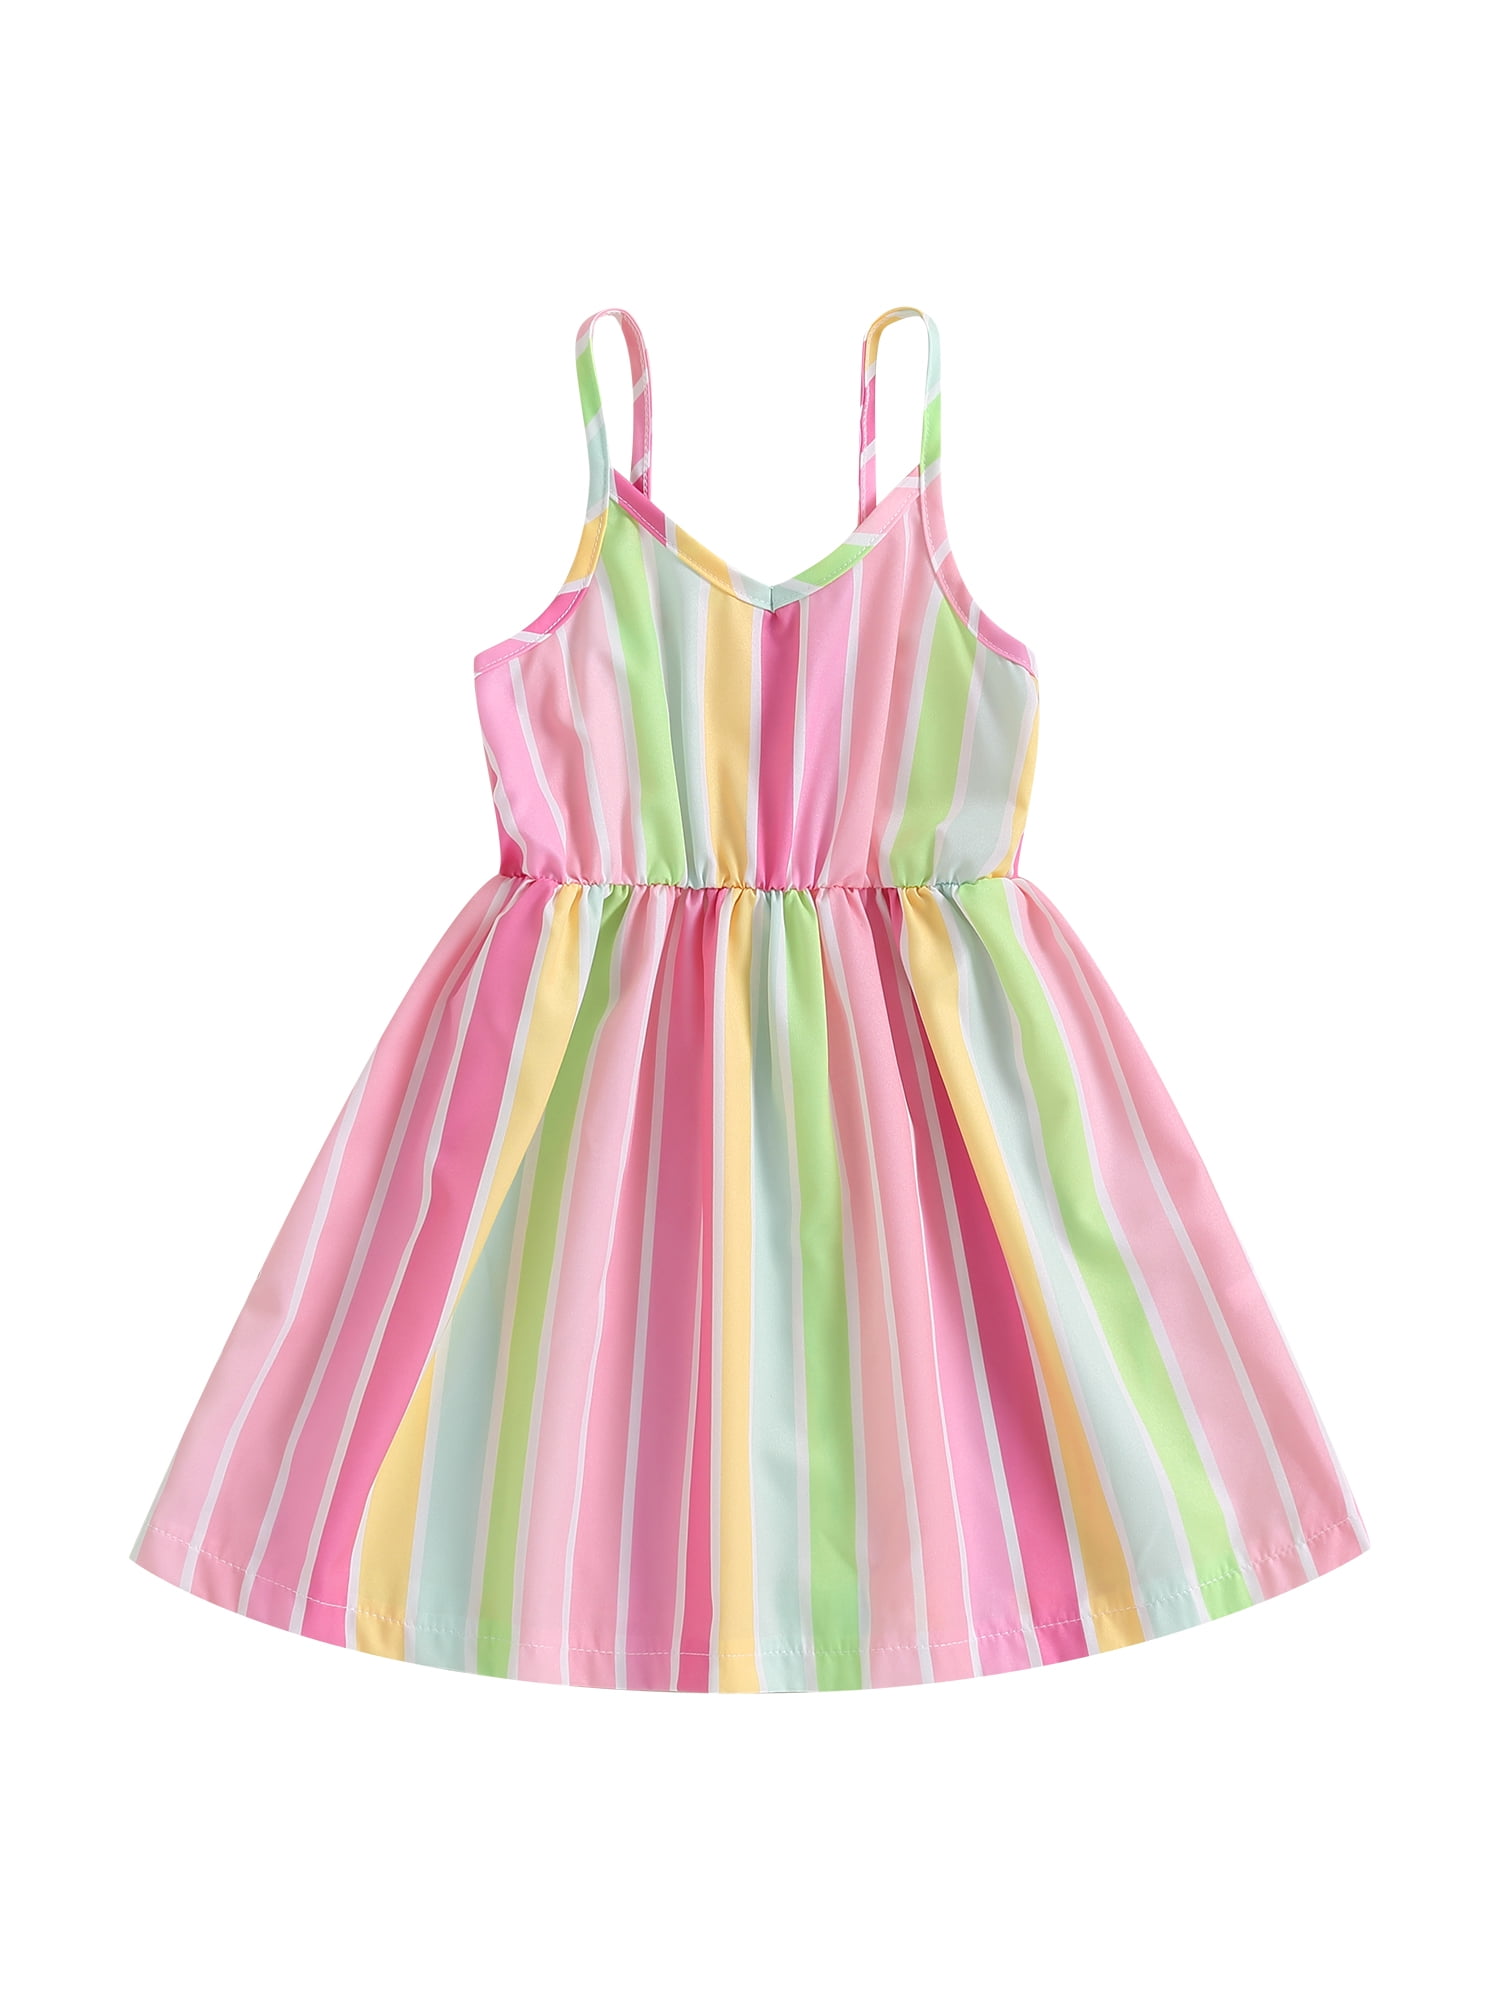 Bagilaanoe Little Girl Summer Dress Striped Sleeveless A-line Dresses ...